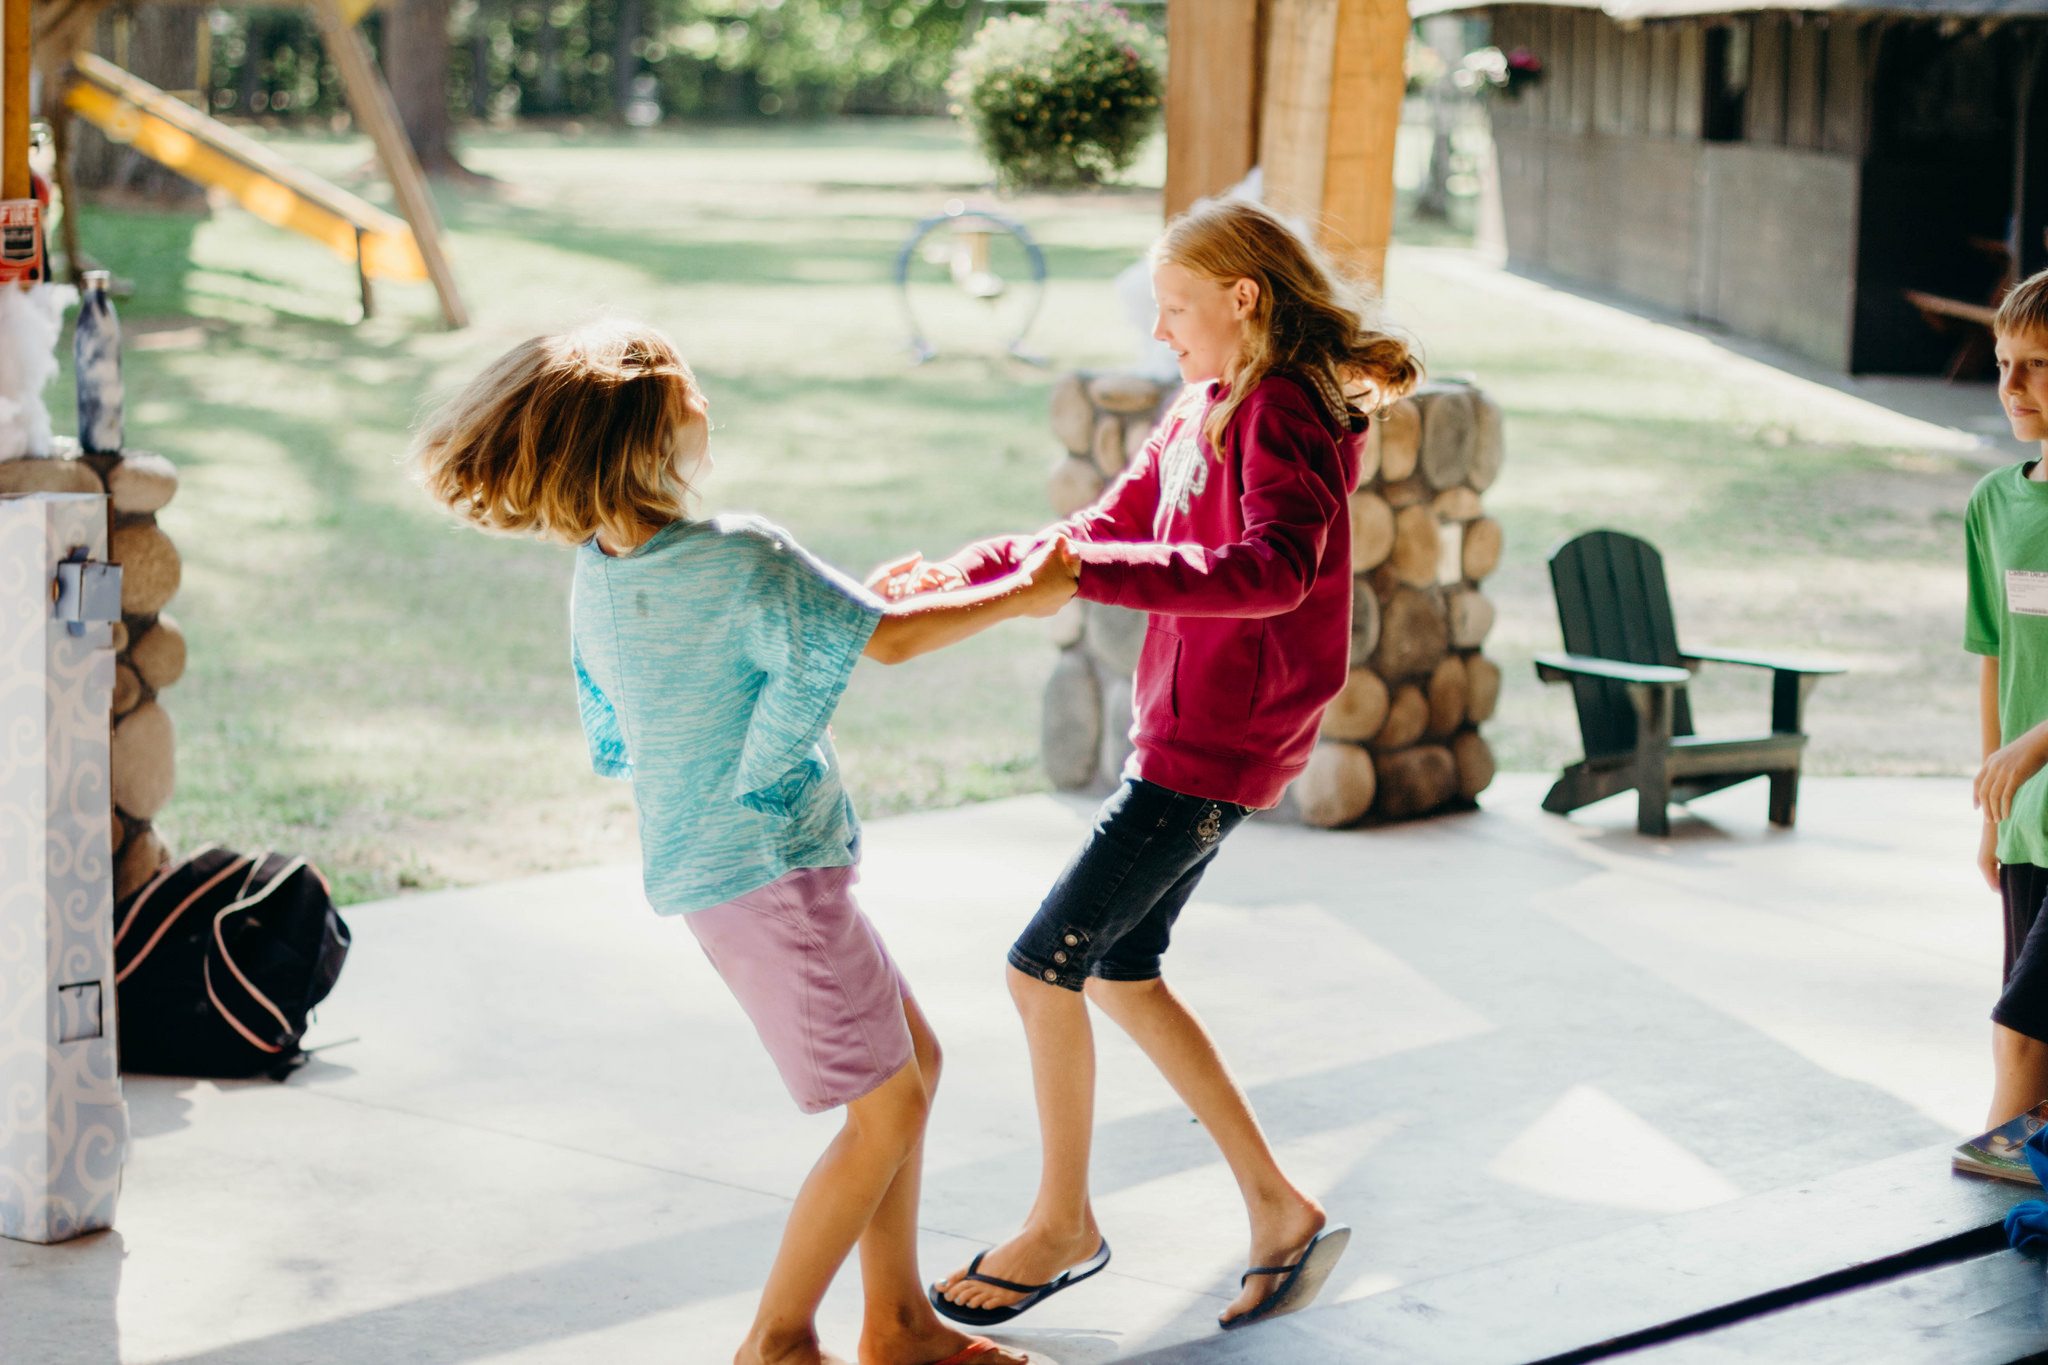 Two young girls dancing.